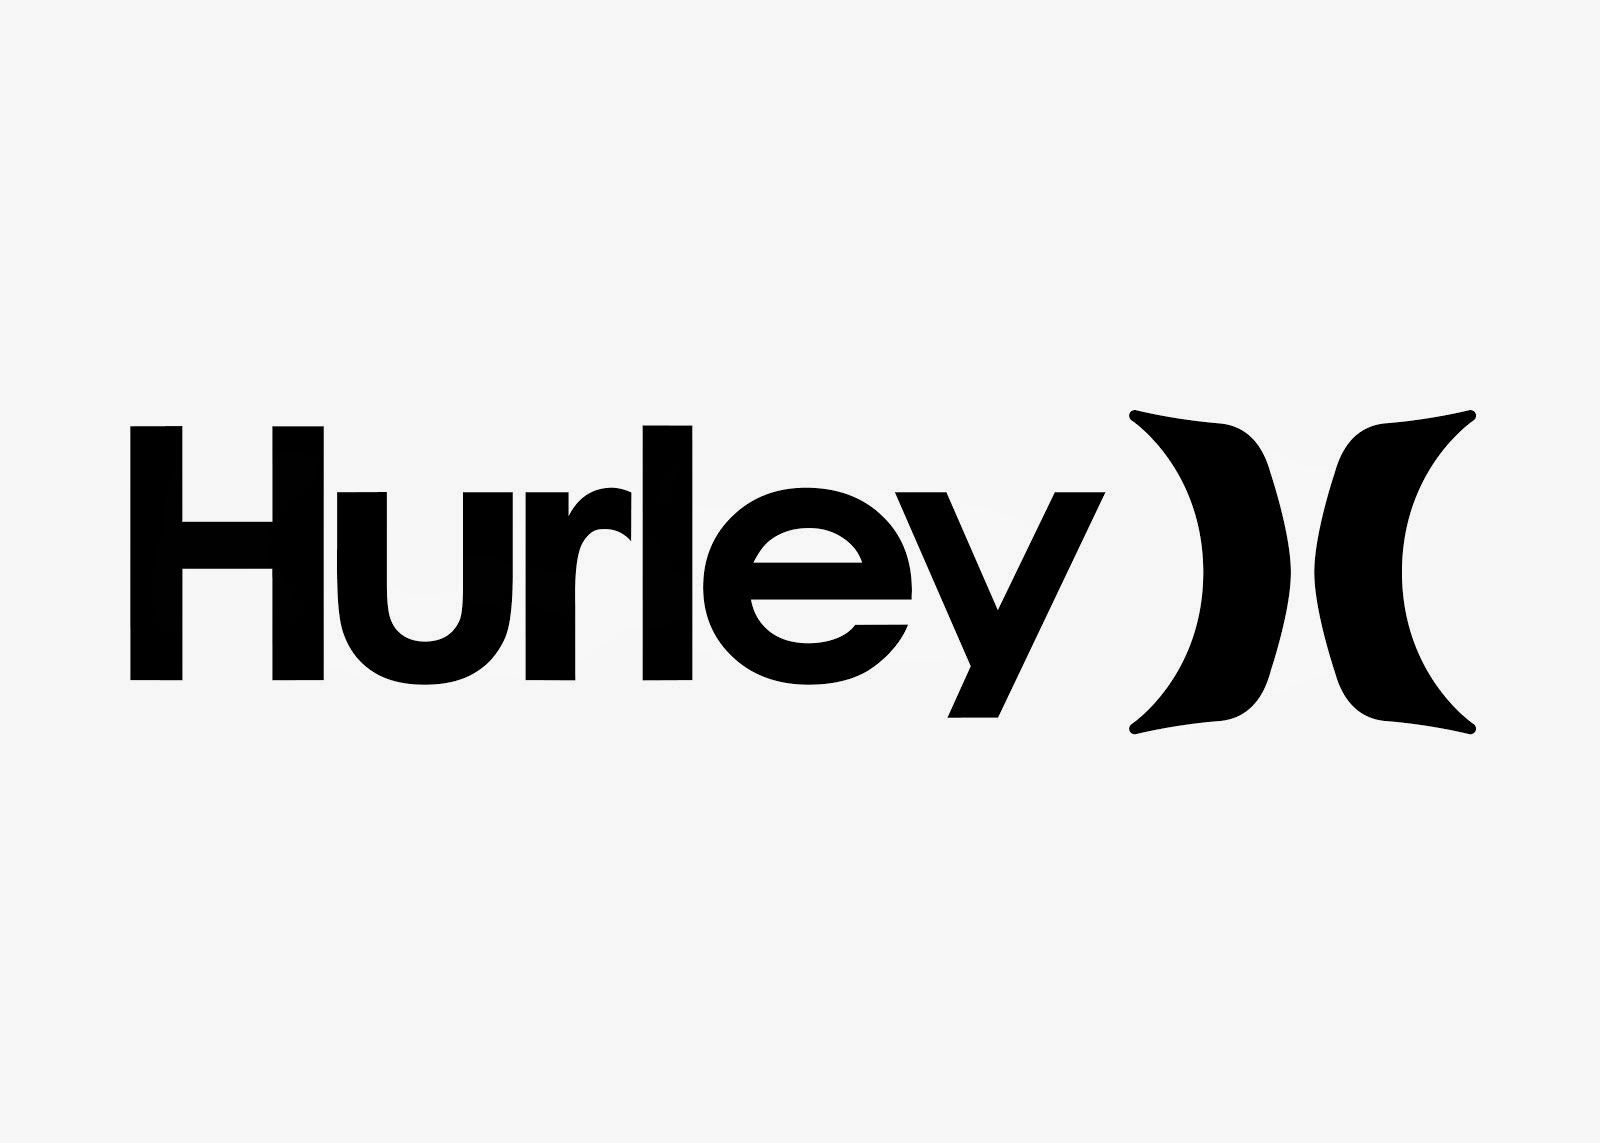 Hurley Desktop Wallpaper Free Hurley Desktop Background